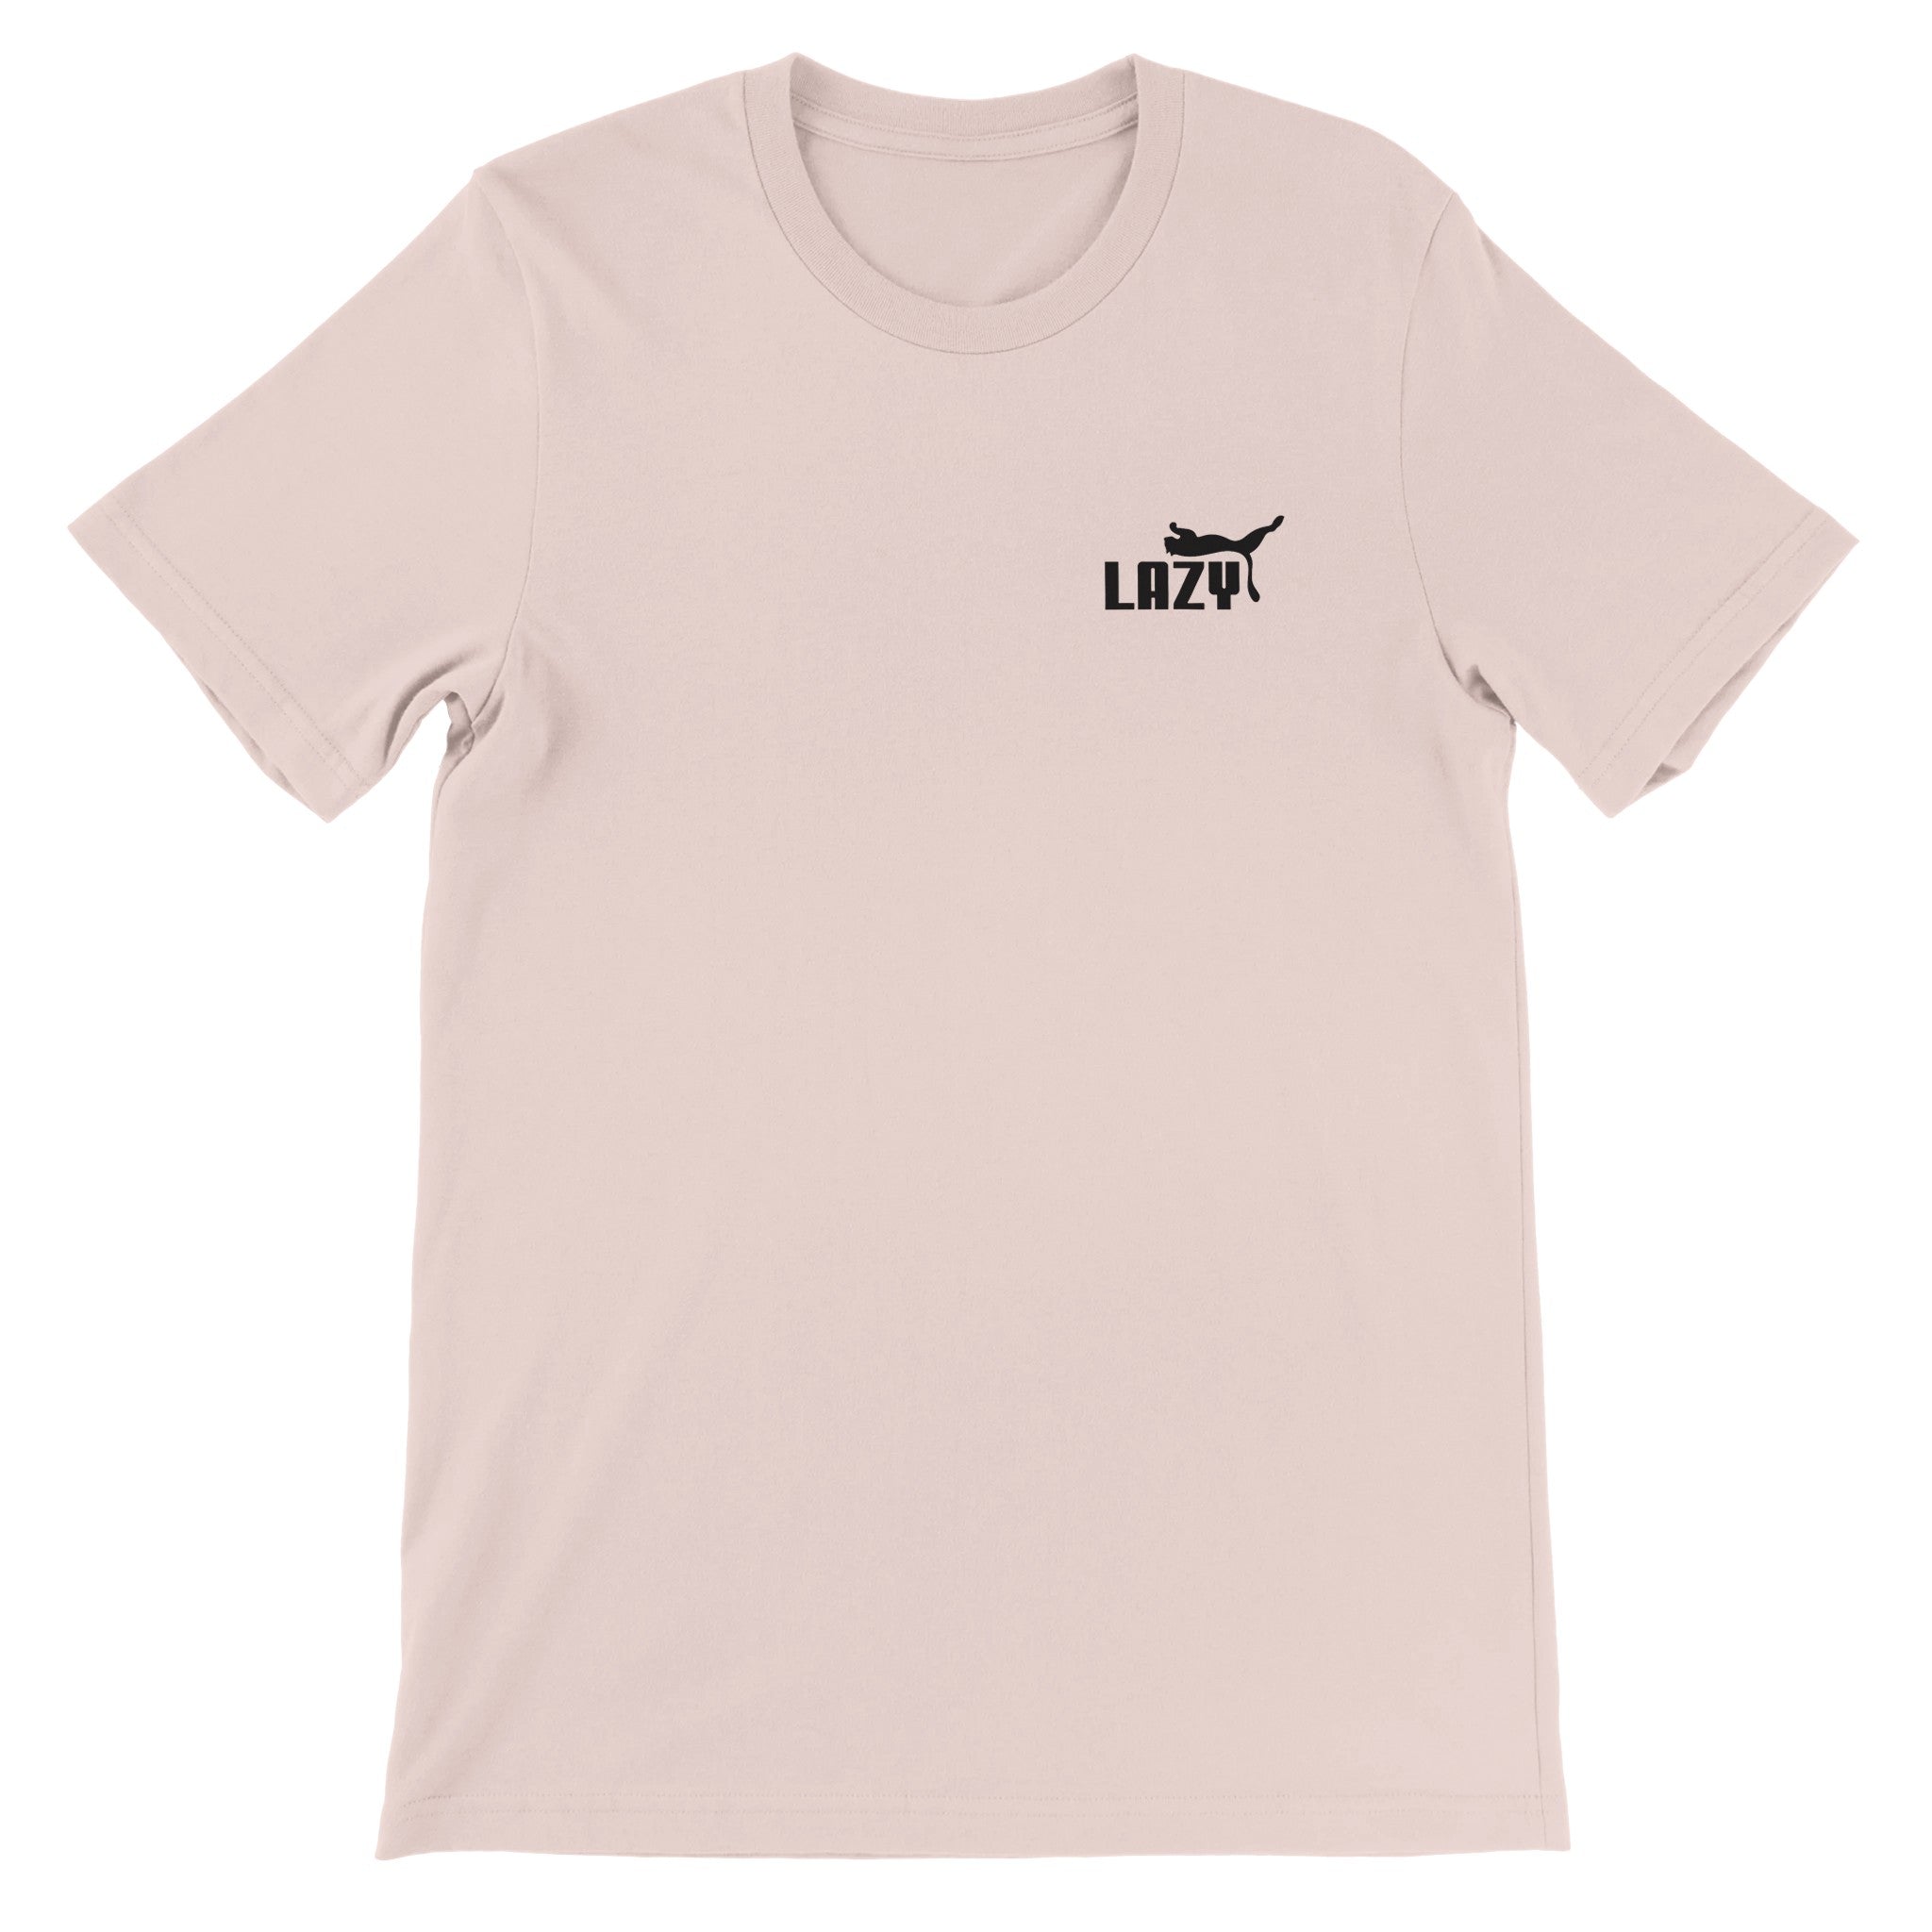 Lazy Crewneck T-shirt - Optimalprint